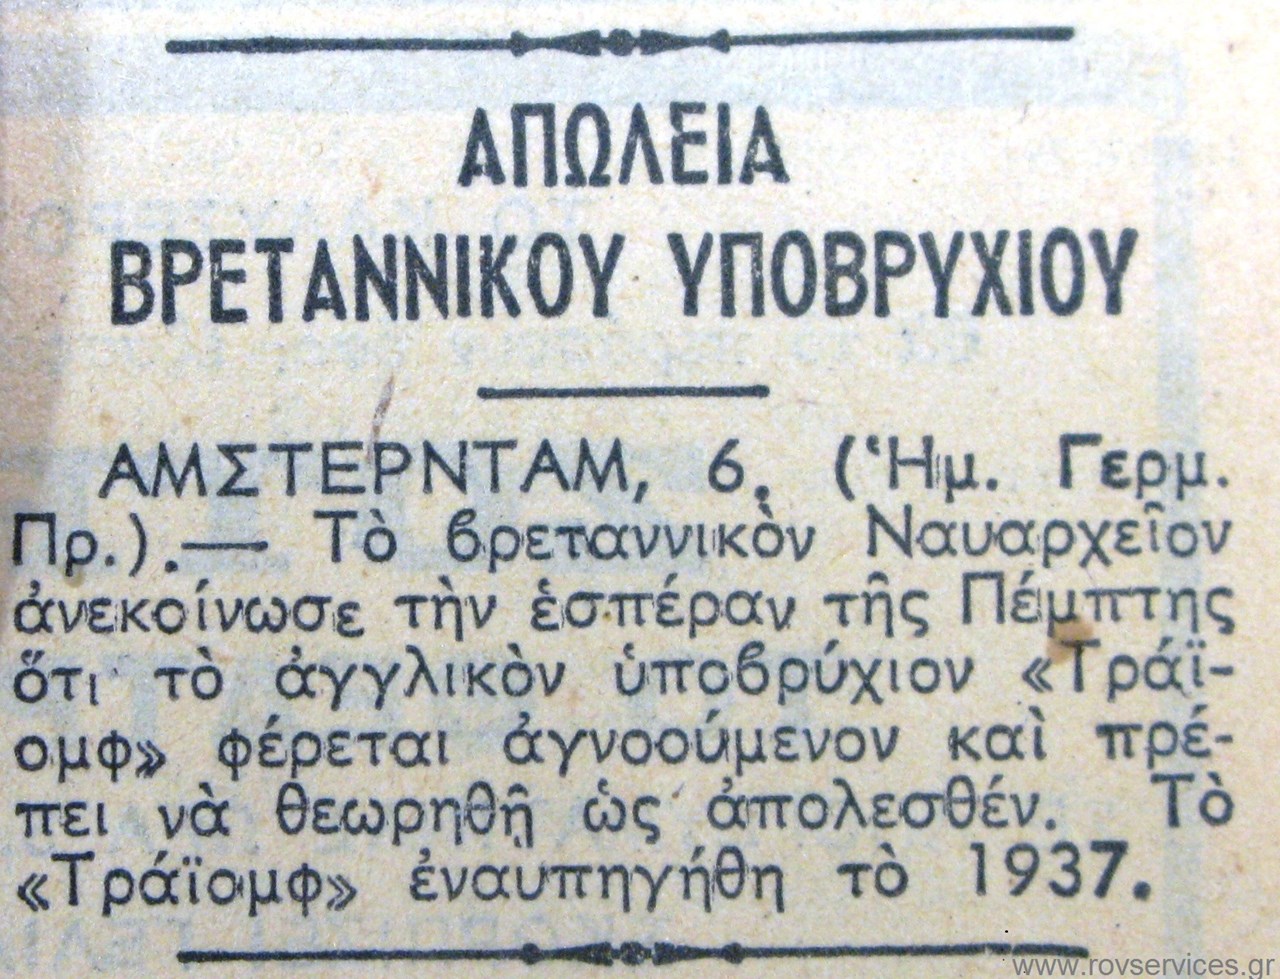 Δημοσίευμα της εφημερίδας ΚΑΘΗΜΕΡΙΝΗ το 1942 όπου αναφέρει την απώλεια του υποβρυχίου Triumph στην Ελλάδα. Αρχείο Εφημερίδων της Γενικής Γραμματείας Επικοινωνίας & Ενημέρωσης